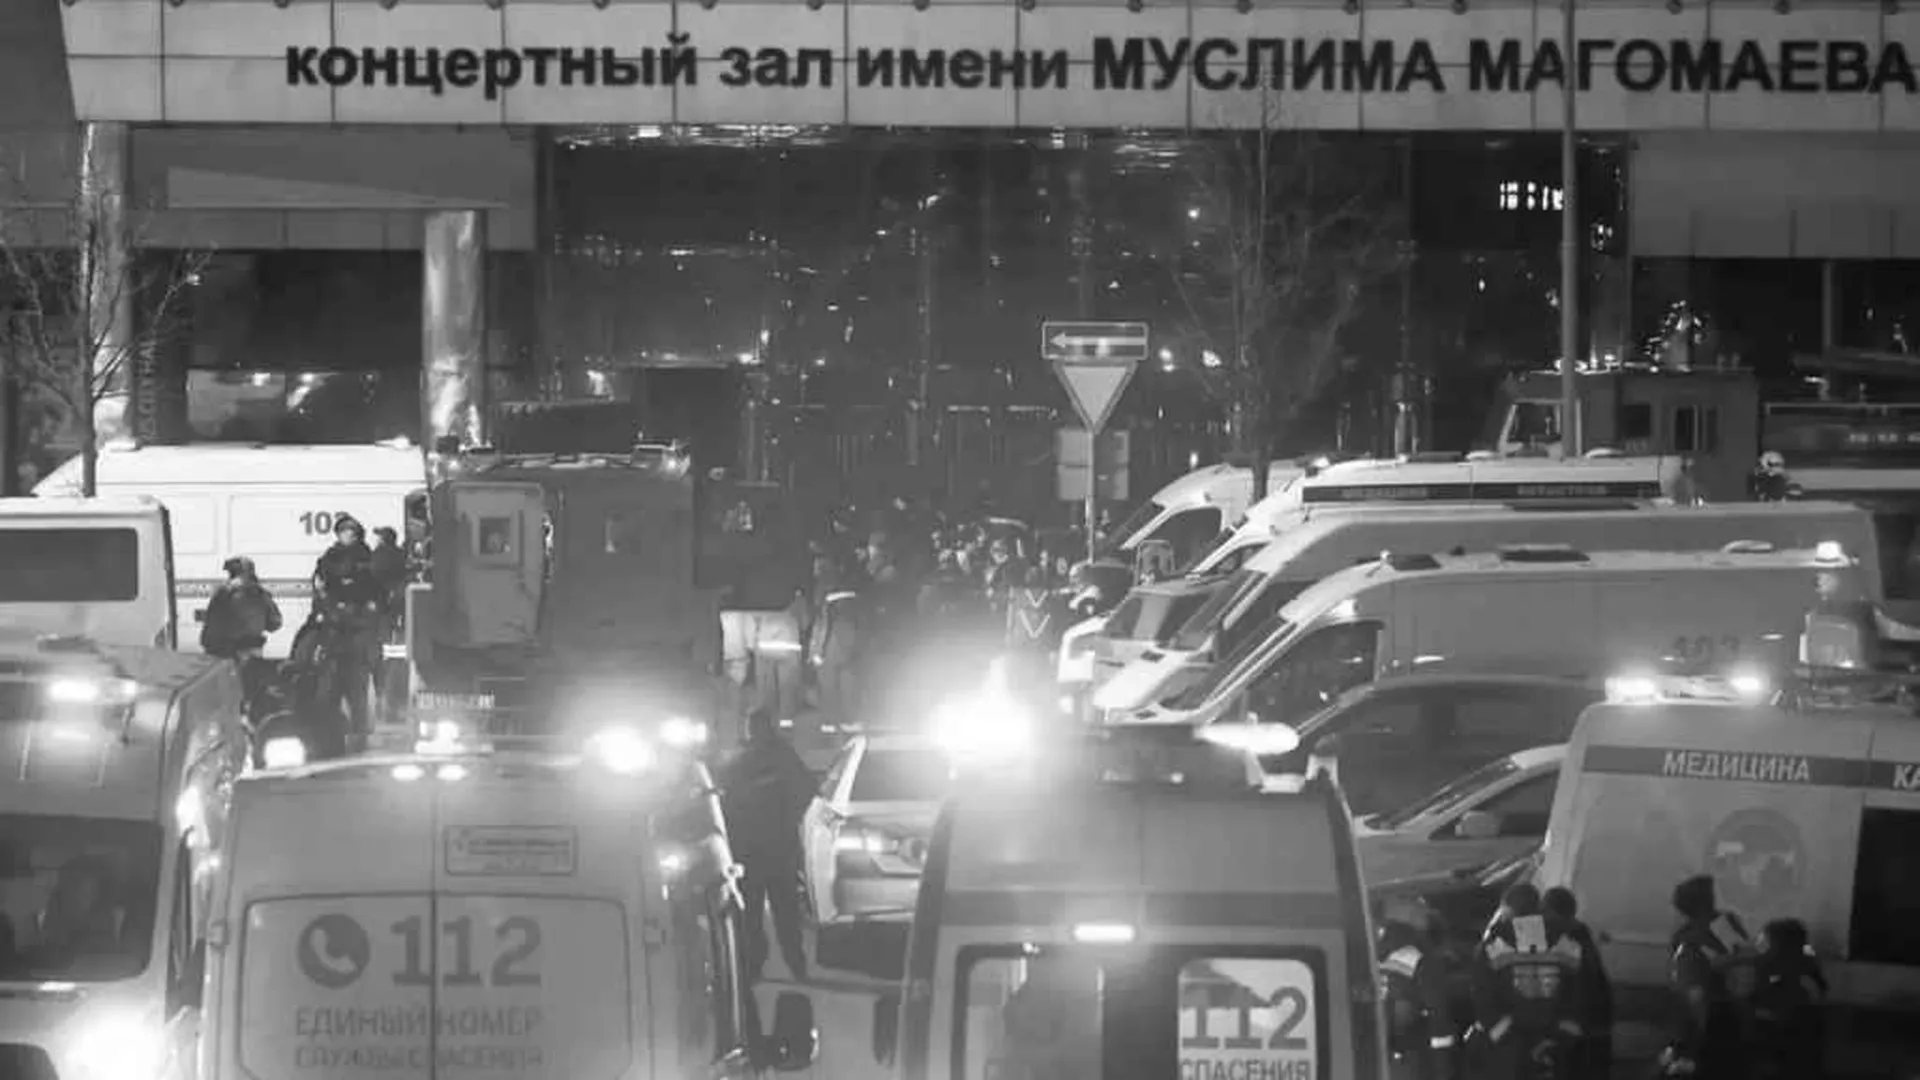 Мэр Москвы доложил о работе медиков в первые минуты теракта в Crocus City Hall